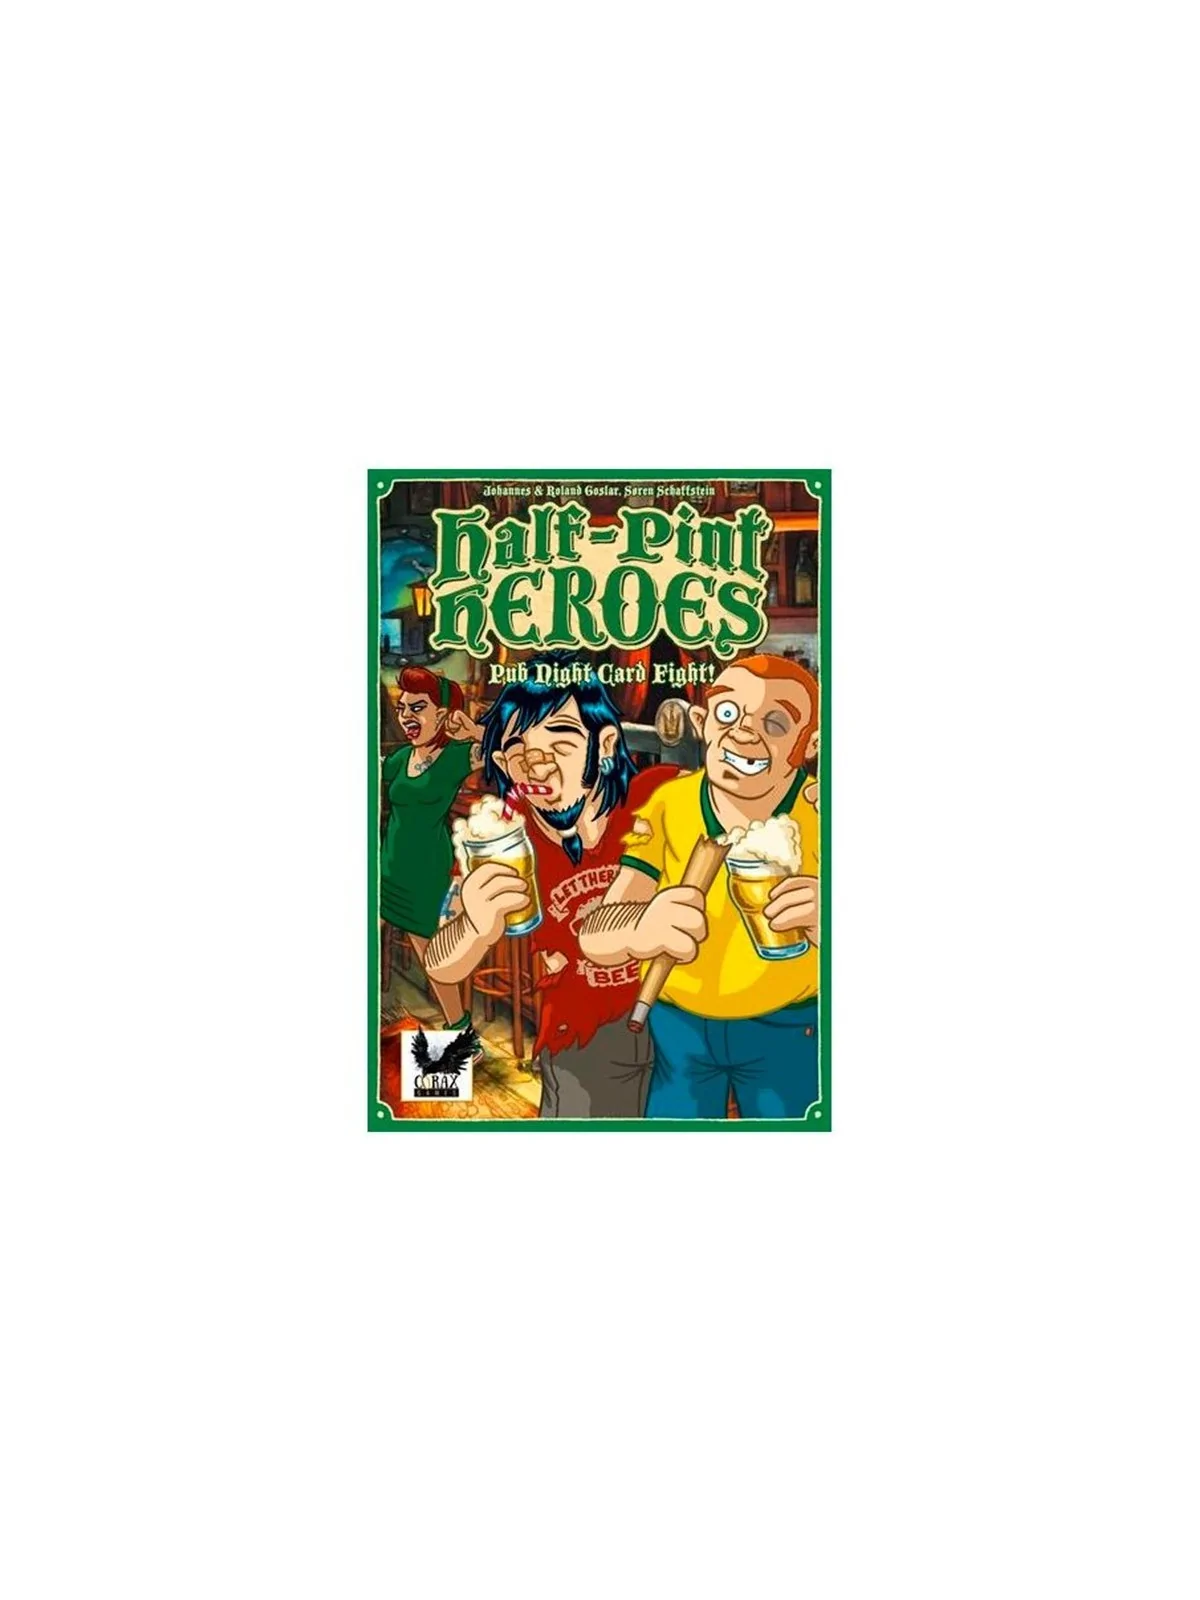 Comprar Half Pint Heroes barato al mejor precio 22,50 € de GDM Games